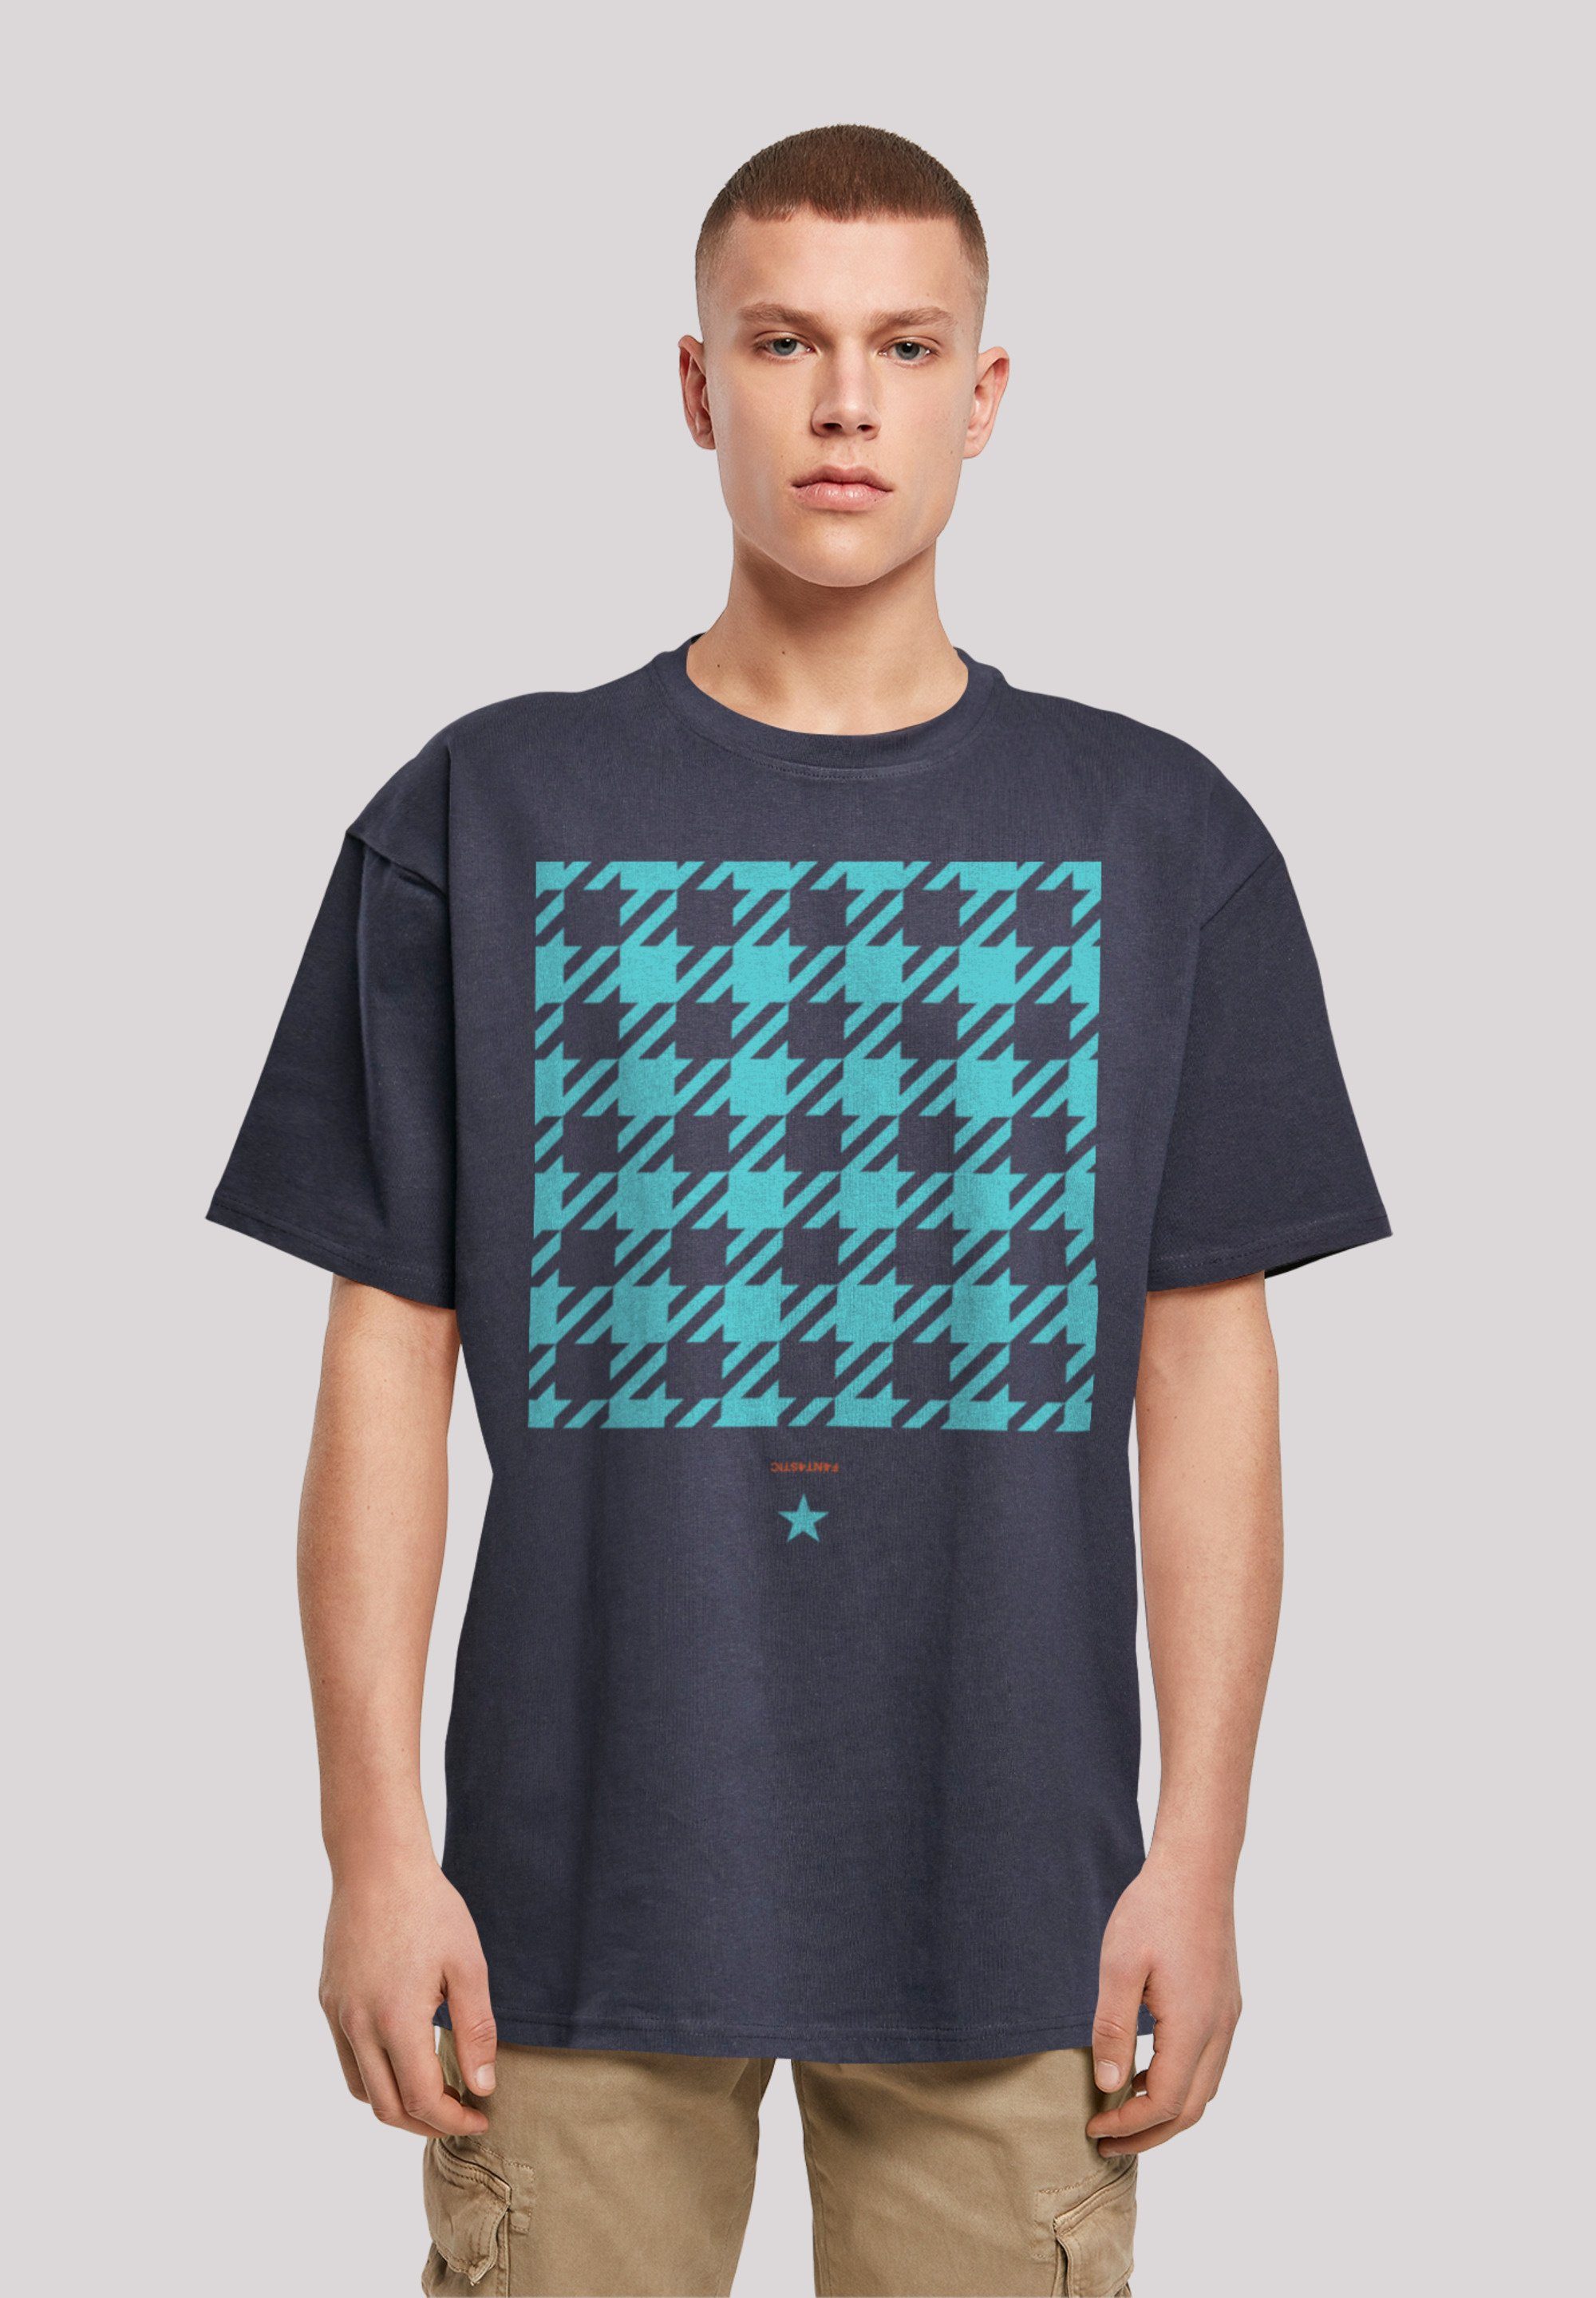 bitte bestellen blau aus, weit Größe eine Print, kleiner T-Shirt Karo F4NT4STIC Fällt Hahnentritt